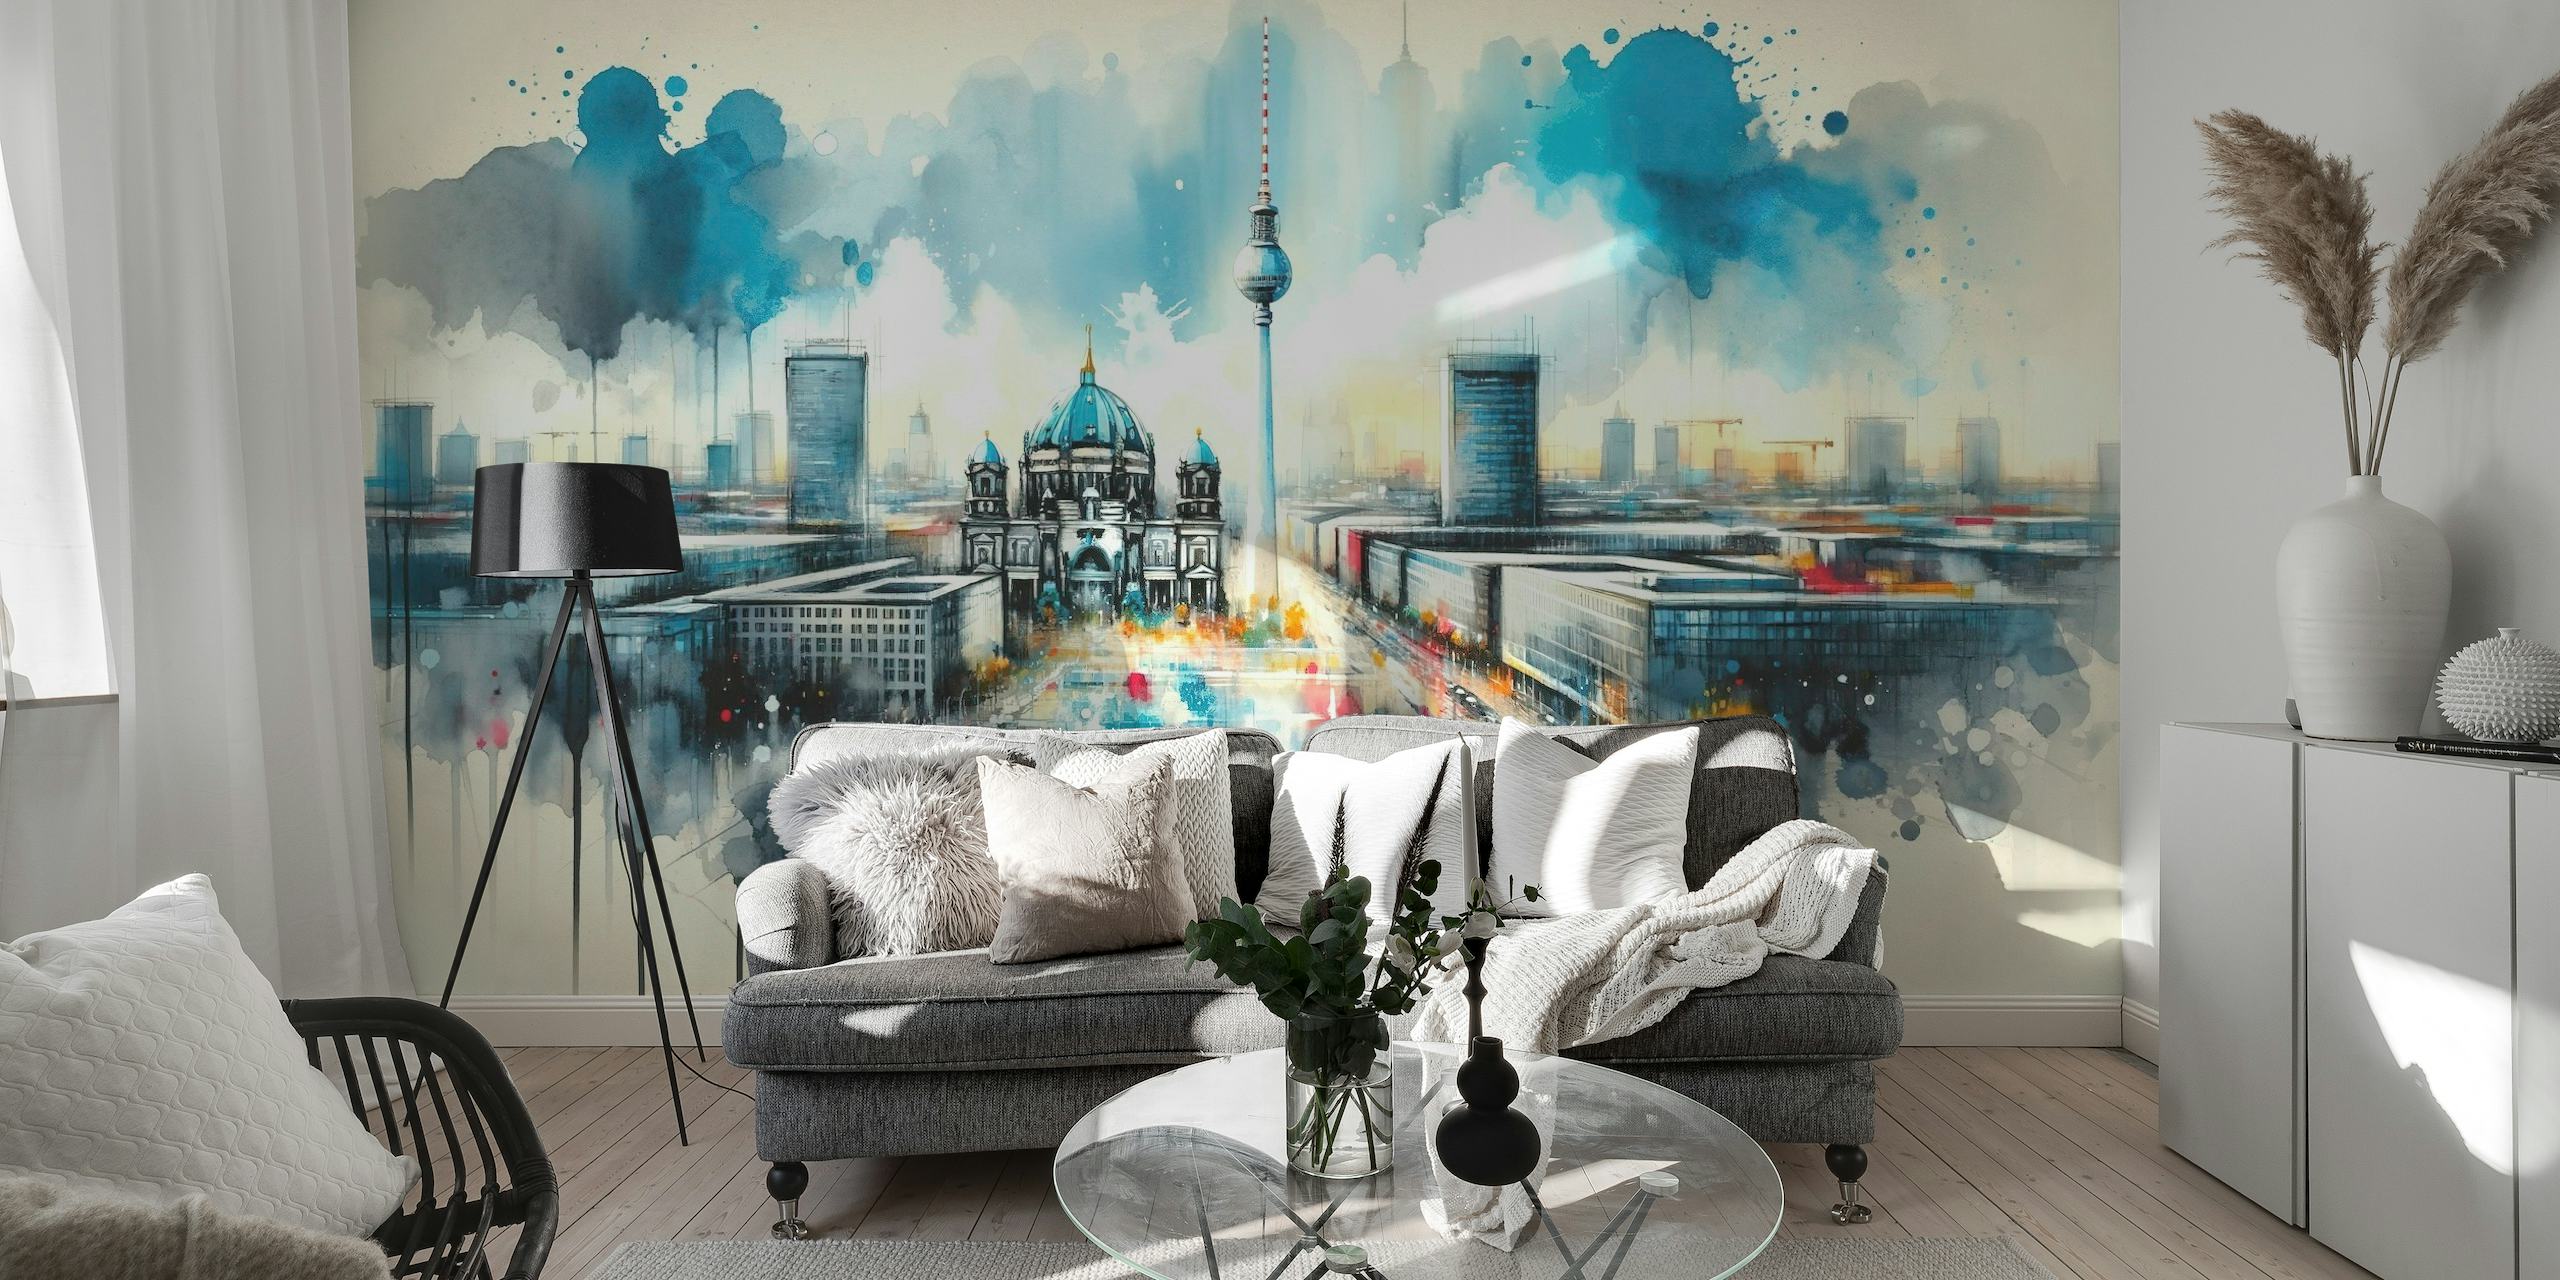 Aquarell-Wandbild der modernen Architektur Berlins mit ikonischen Wahrzeichen und einer dynamischen, künstlerischen Interpretation.